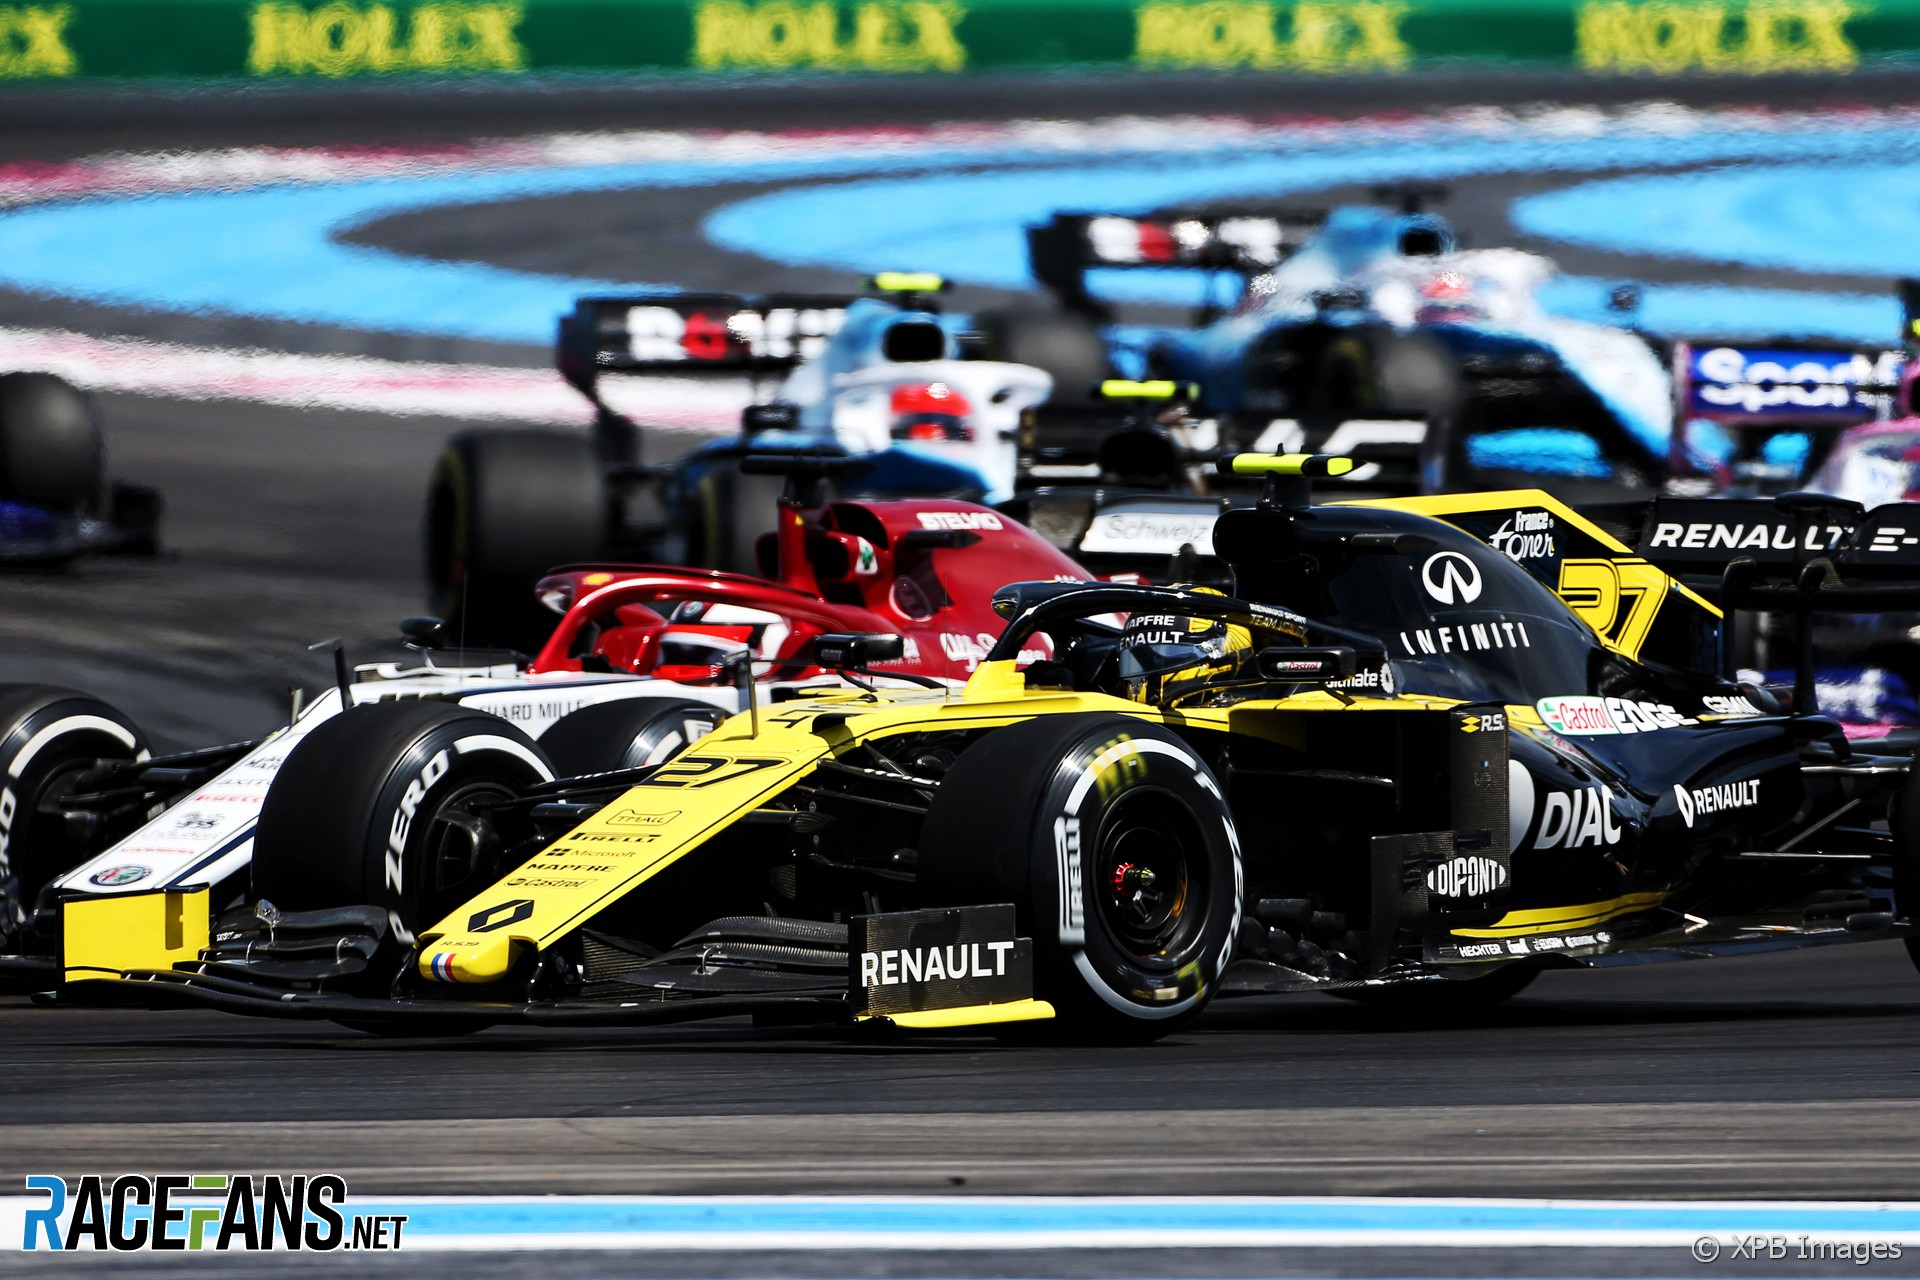 Nico Hulkenberg, Renault, Paul Ricard, 2019